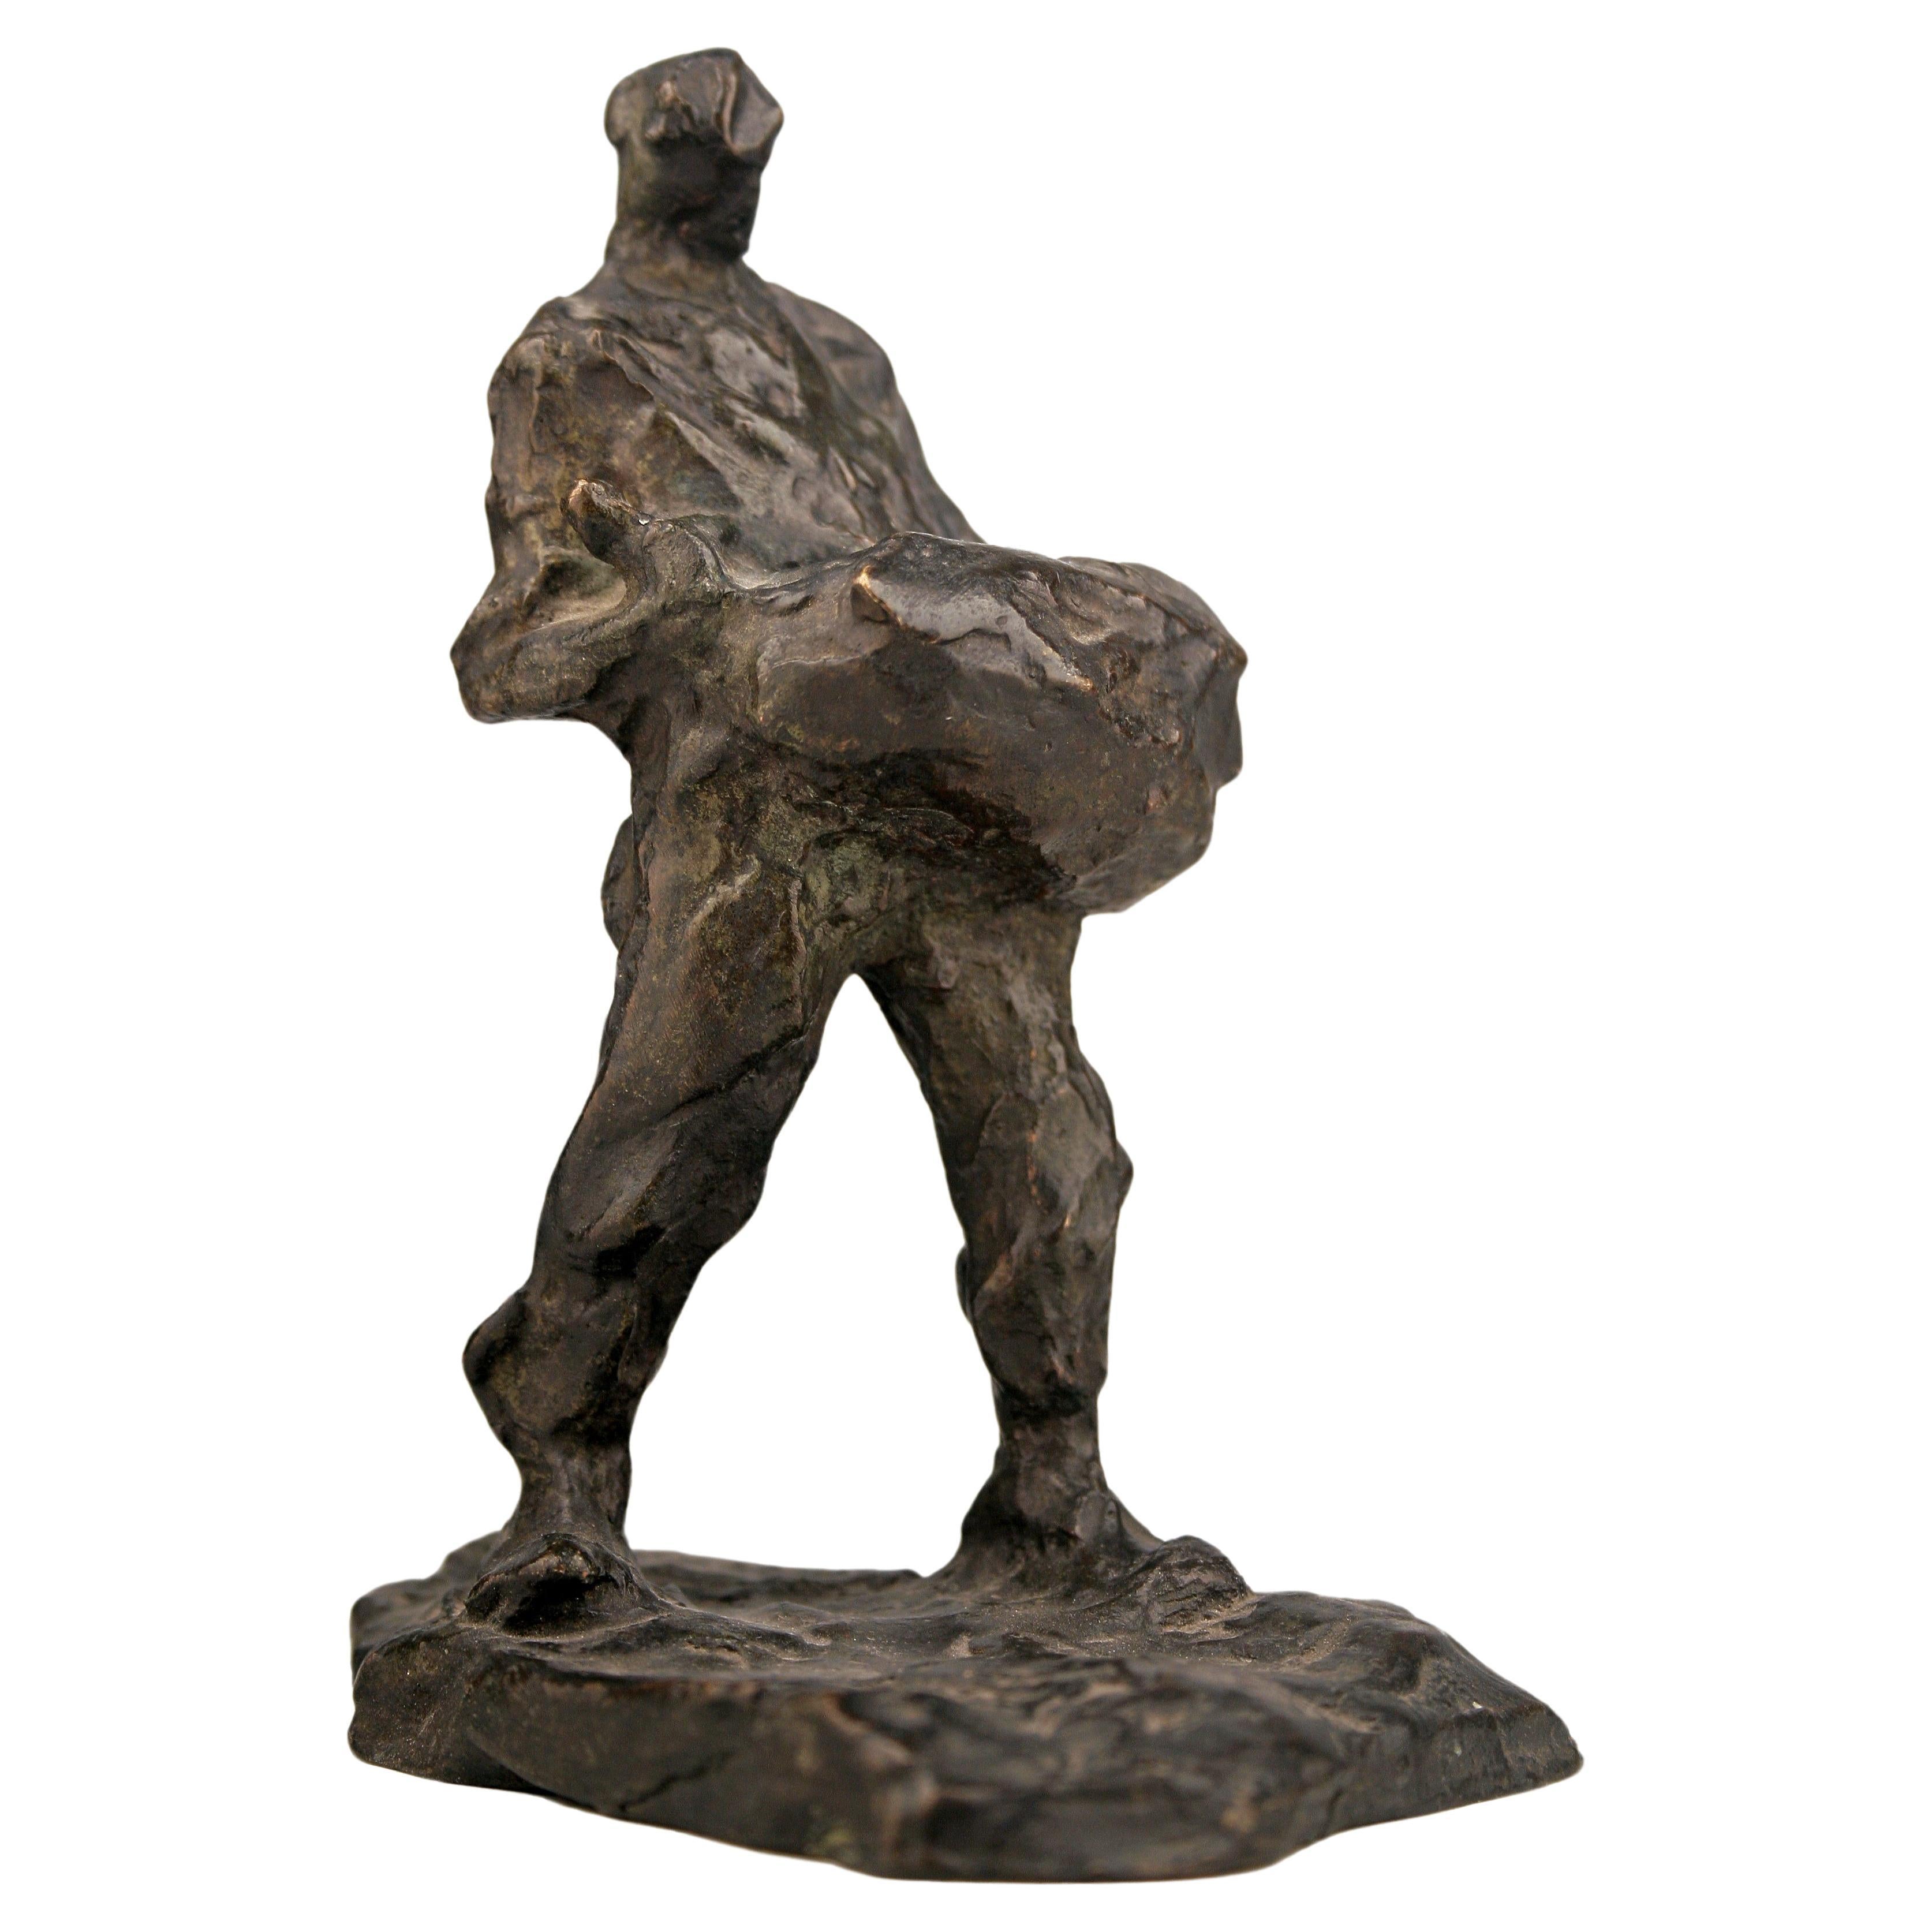 Bronzeskulptur eines transportierenden Mannes aus dem frühen 20. Jahrhundert des belgischen Bildhauers Demanet